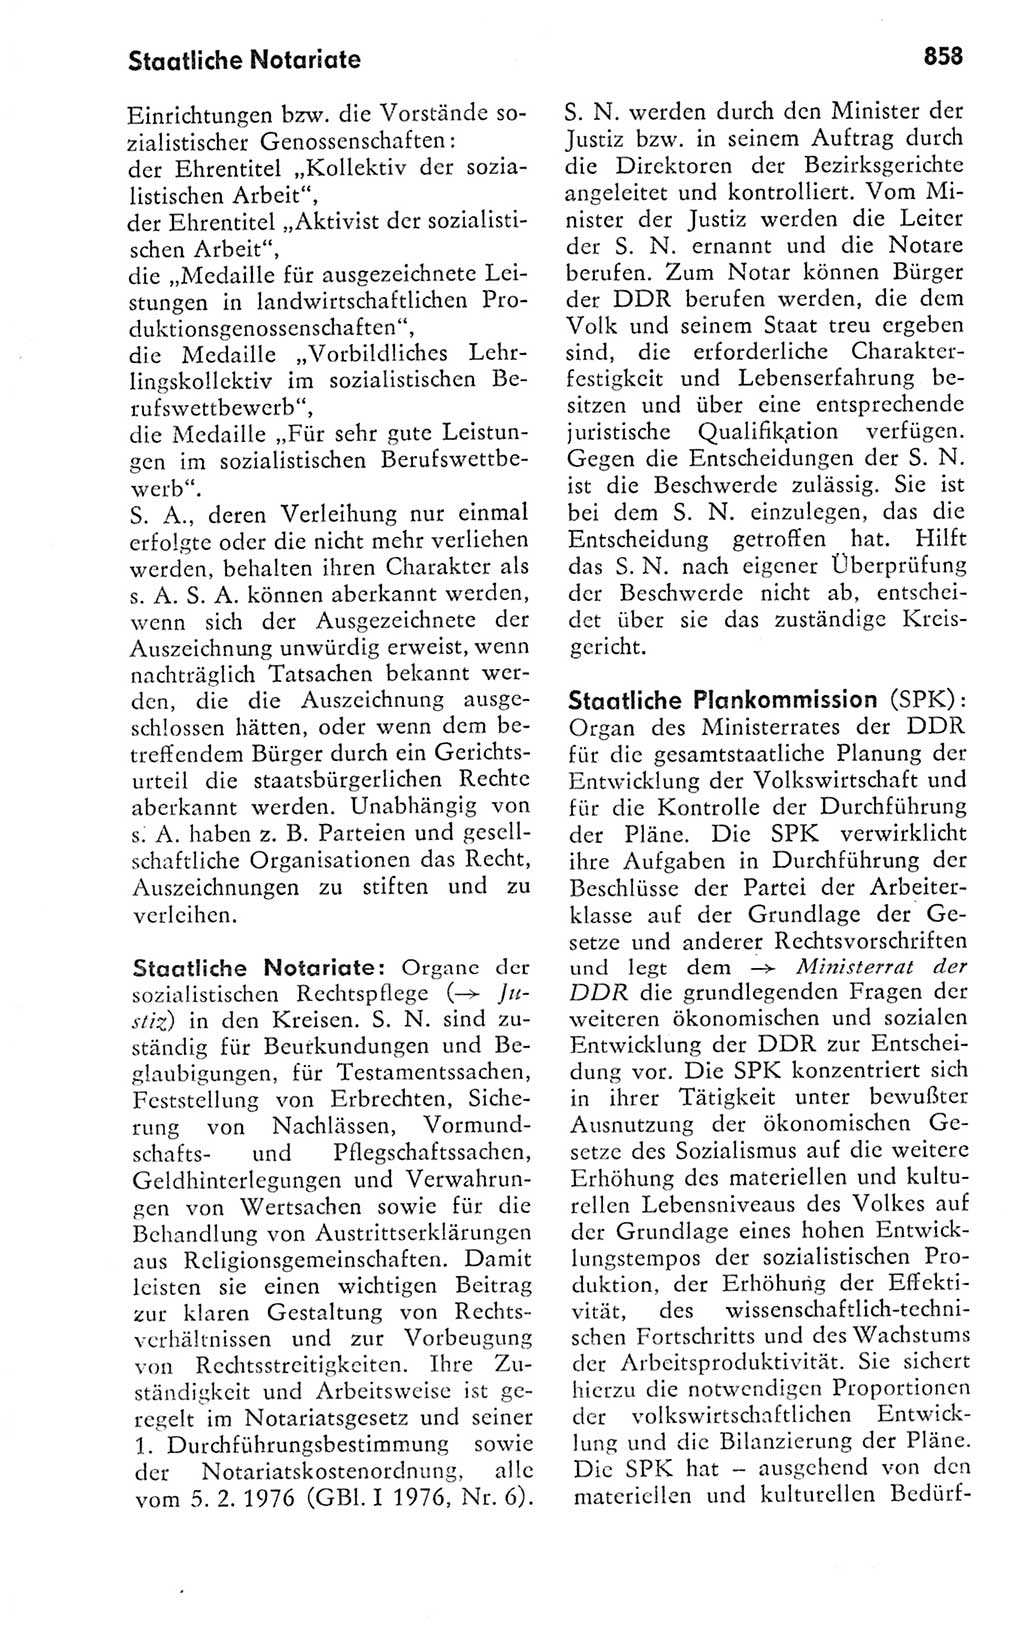 Kleines politisches Wörterbuch [Deutsche Demokratische Republik (DDR)] 1978, Seite 858 (Kl. pol. Wb. DDR 1978, S. 858)